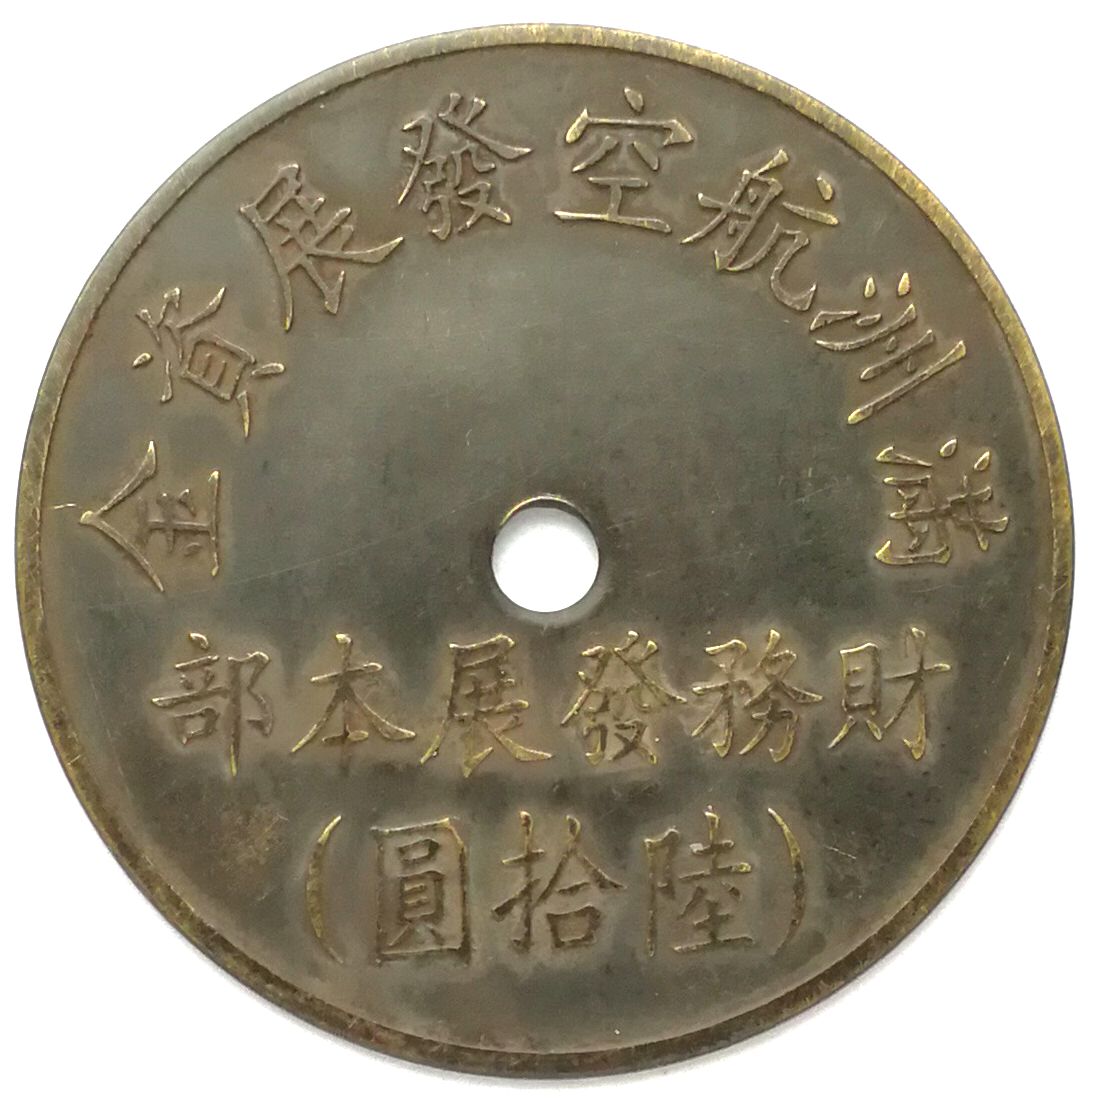 BT486, Manchukuo Aviation Development Fund, 60 Yen Token, 1945